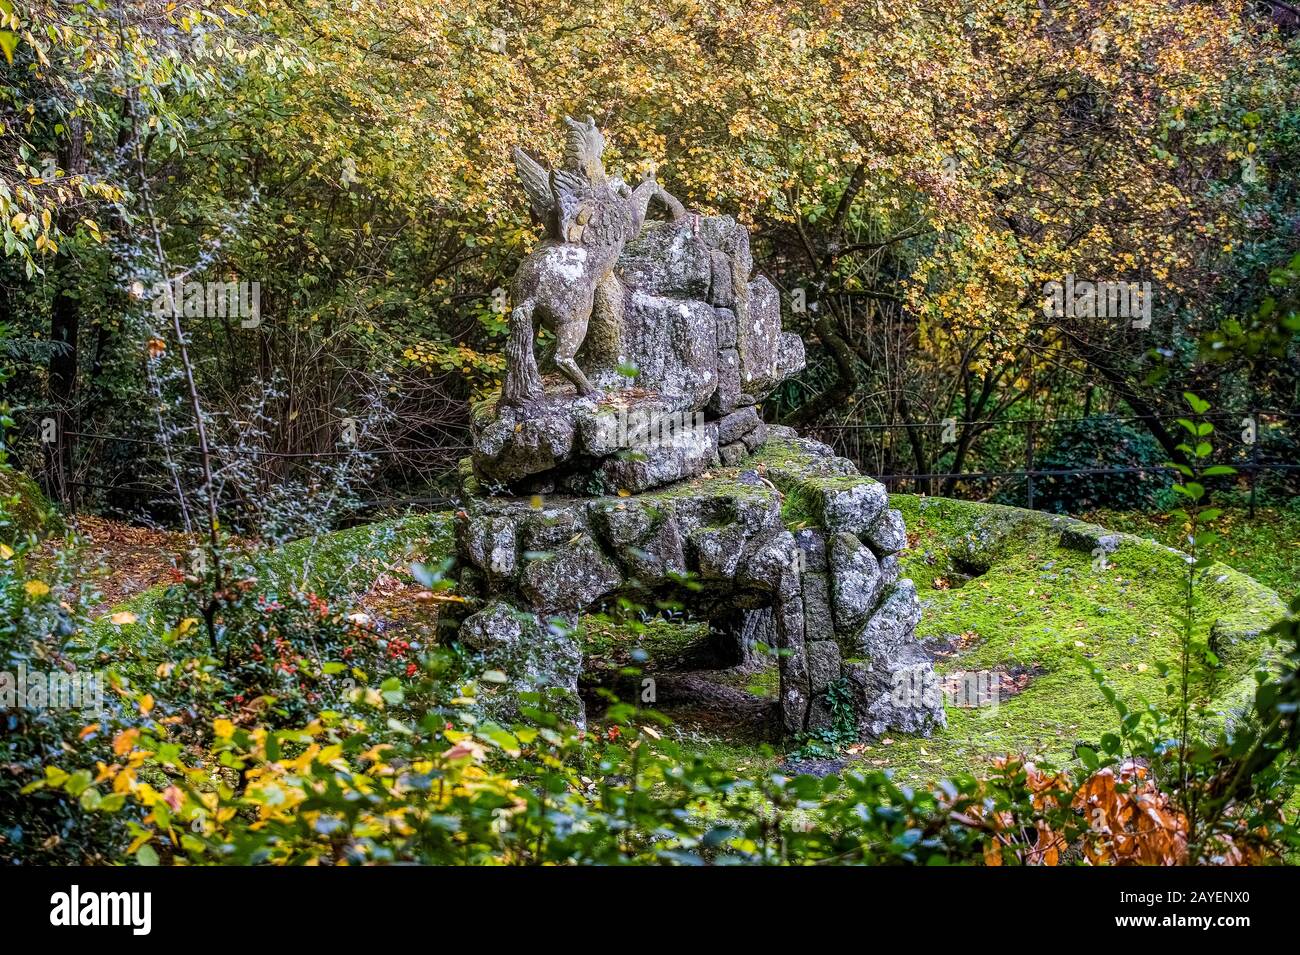 Italia, Lazio, el jardín de Bomarzo de Monstruo ( Giardino Dei Lastri ) - Pegasus , el caballo alado Foto de stock